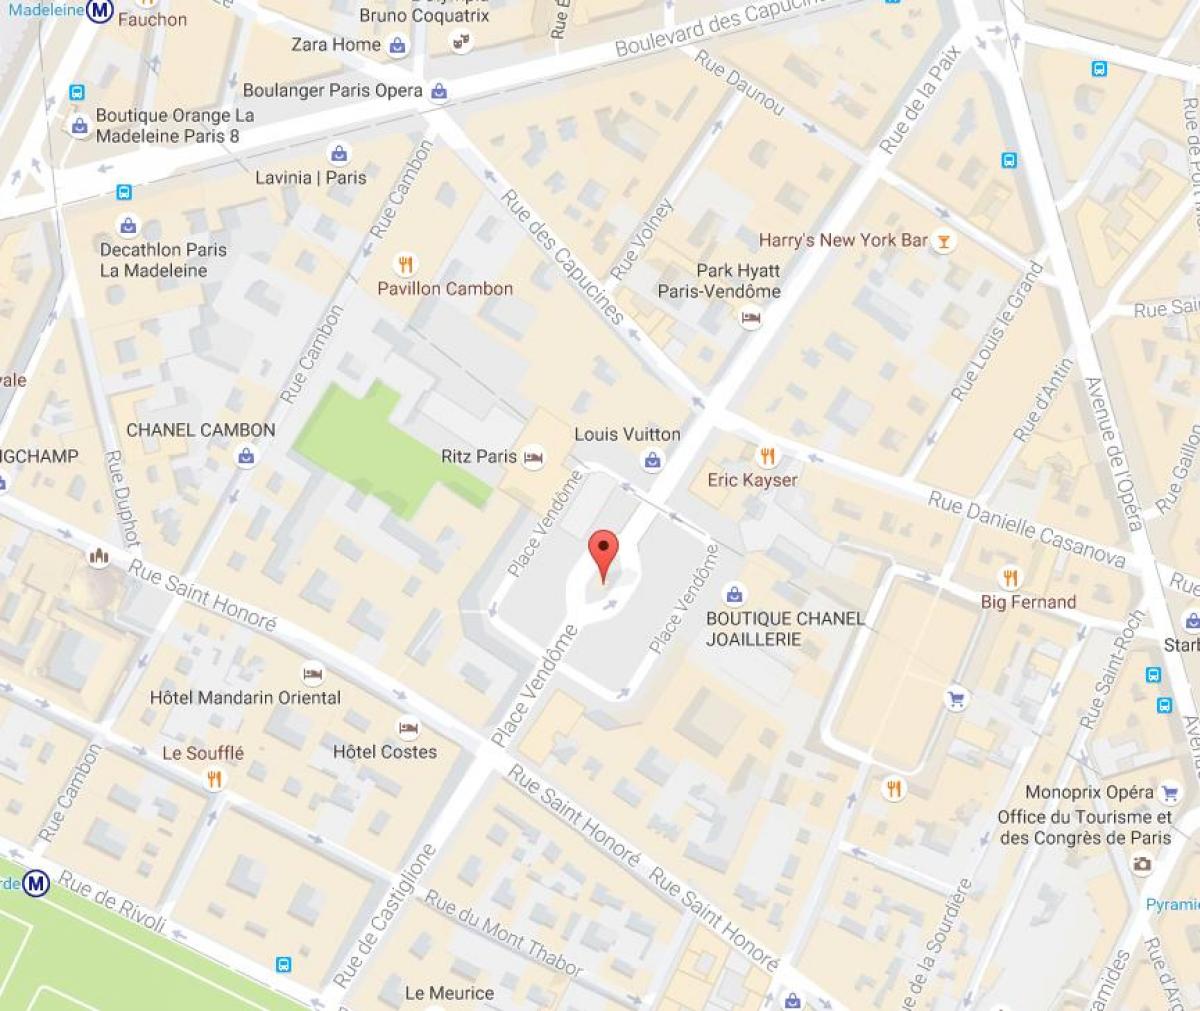 Térkép A Place Vendôme